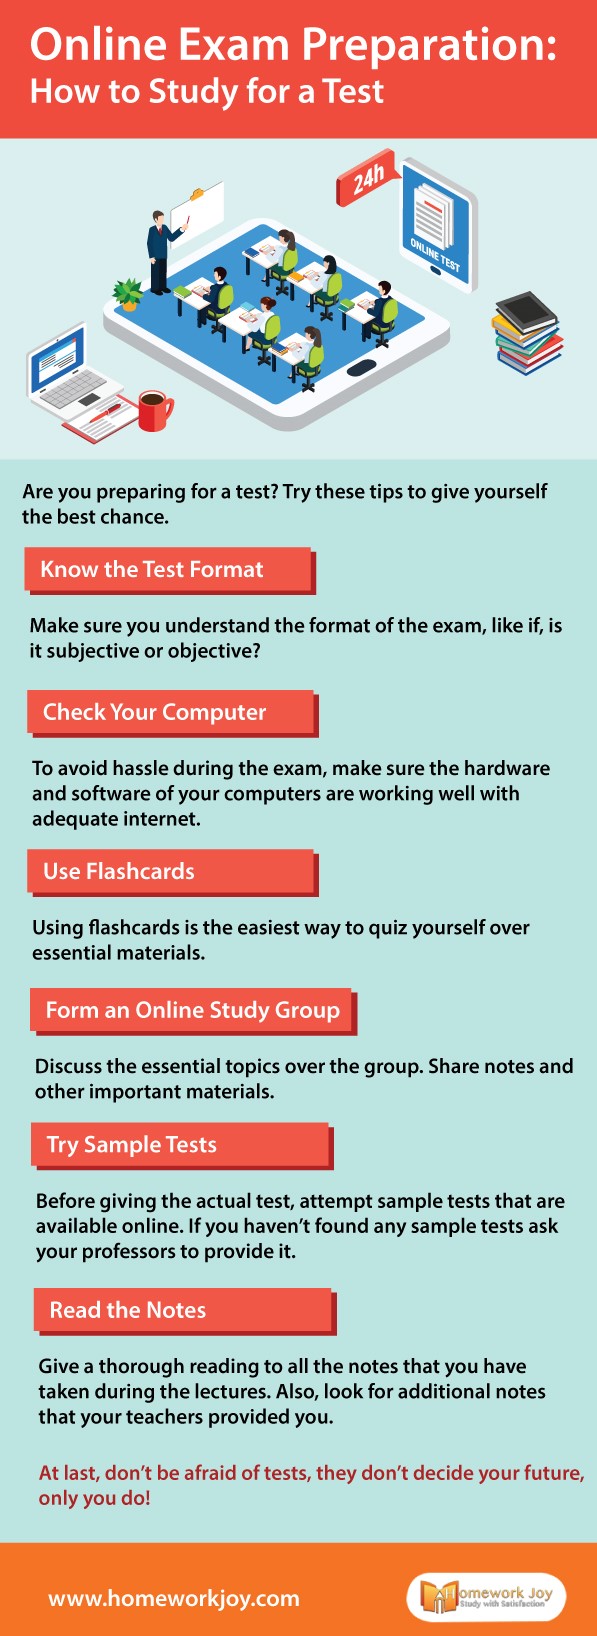 Online Exam Preparation